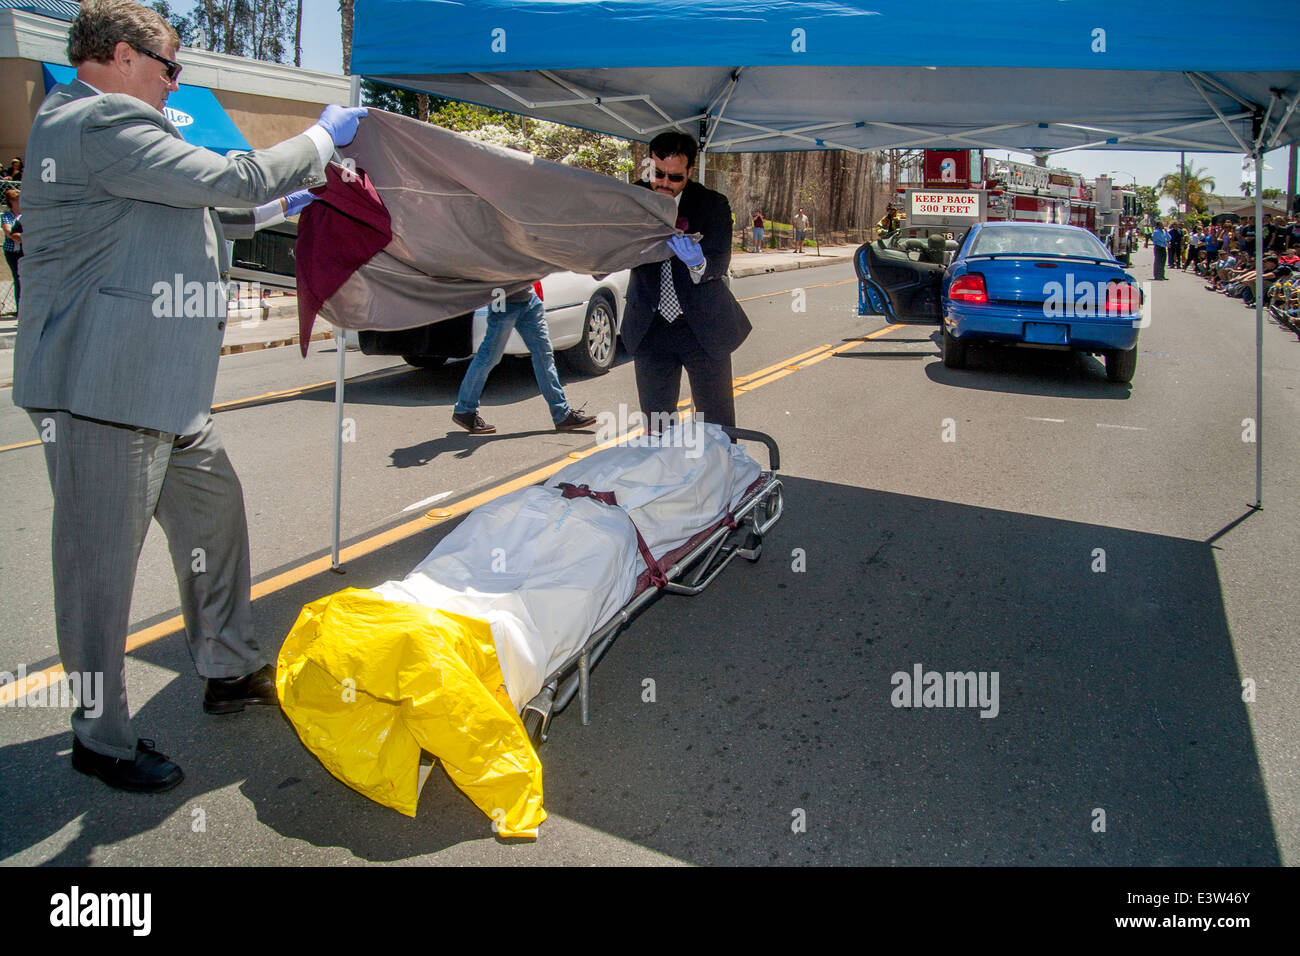 Des bénévoles locaux undertakers recueillir le 'Corpse' de la victime d'un accident dans une dramatisation pour des élèves du secondaire sur les dangers de l'alcool au volant à Anaheim, CA. Remarque foule en arrière-plan. Banque D'Images